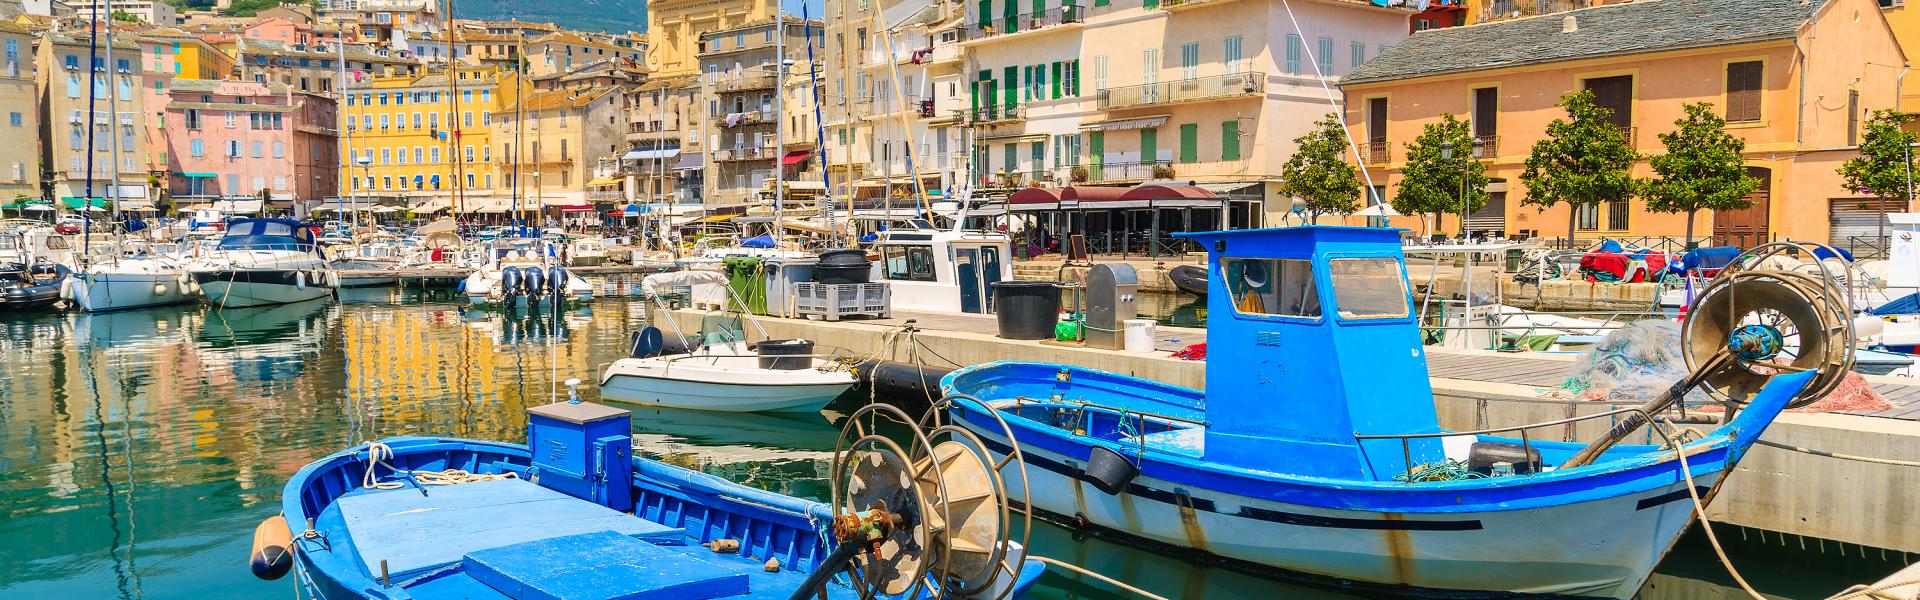 Locations de vacances et gites en Corse - Casamundo